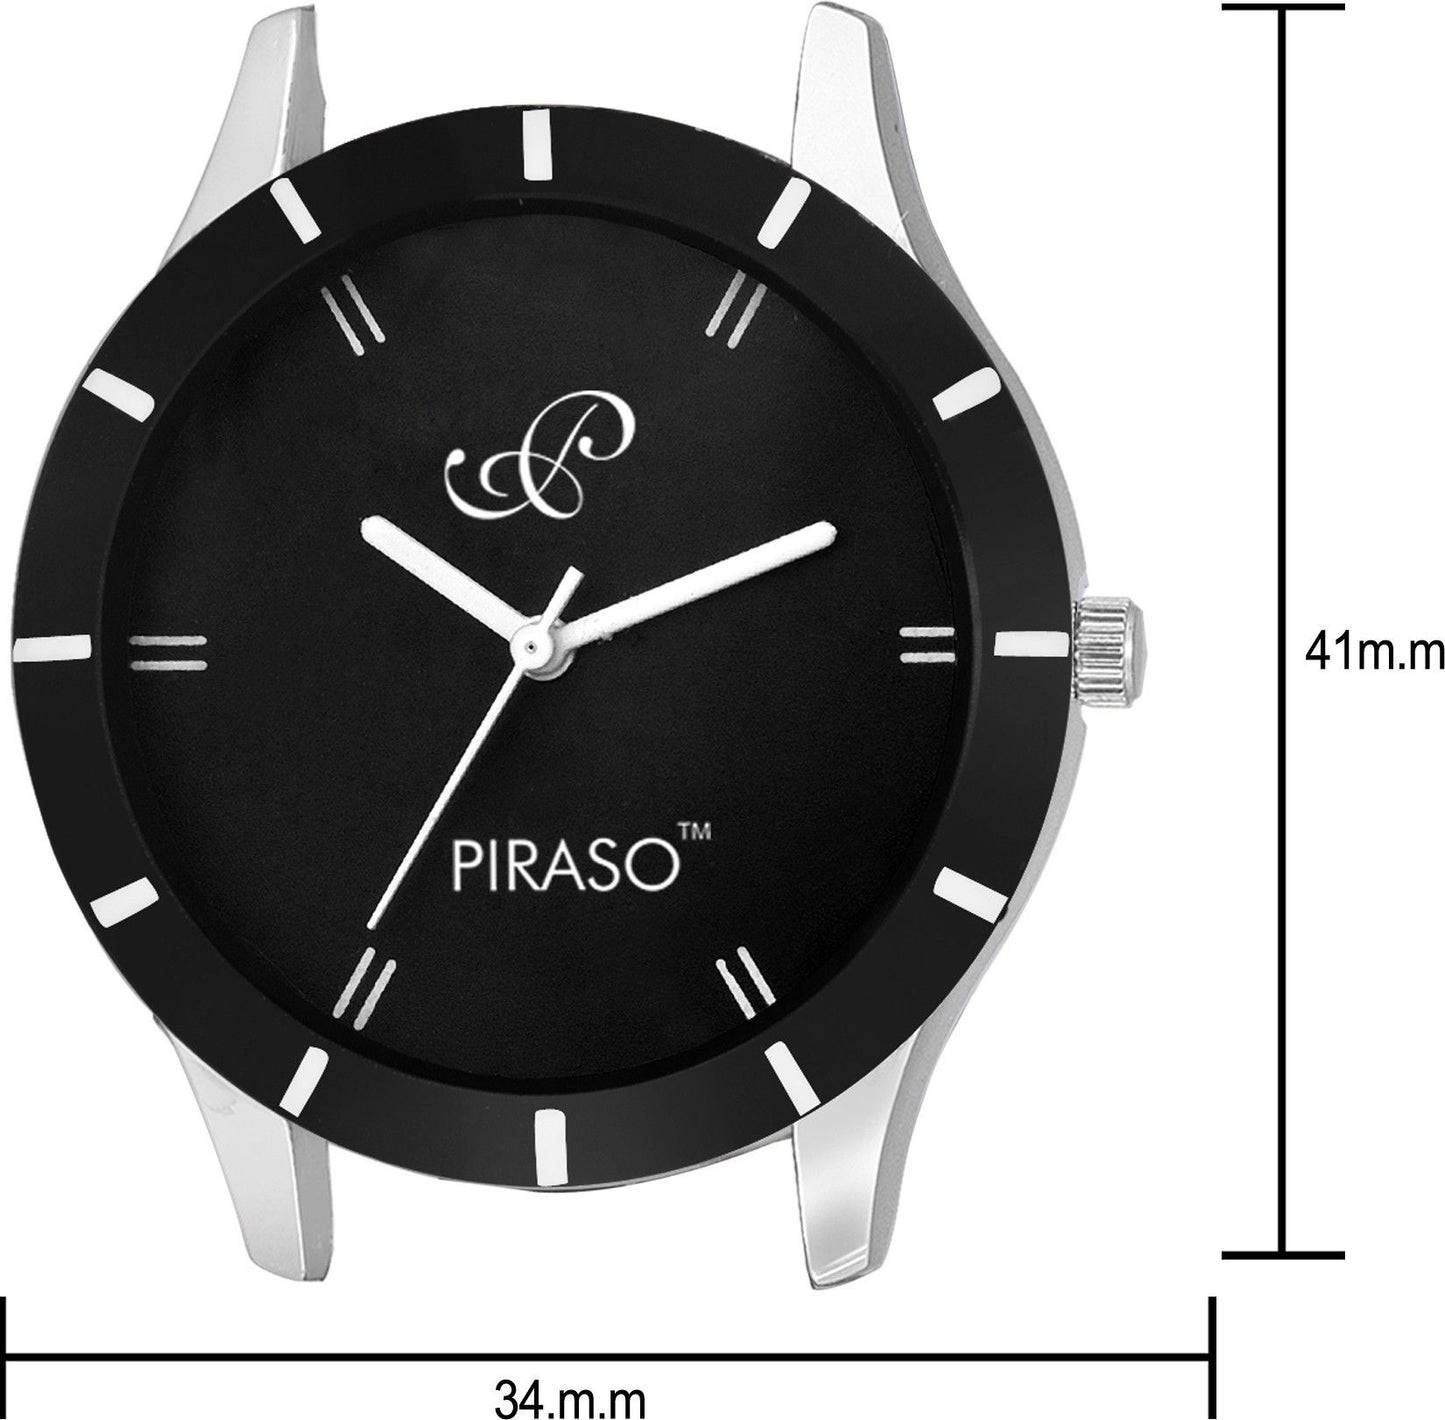 Piraso Analog Genuine Leather Strap Watch For Women